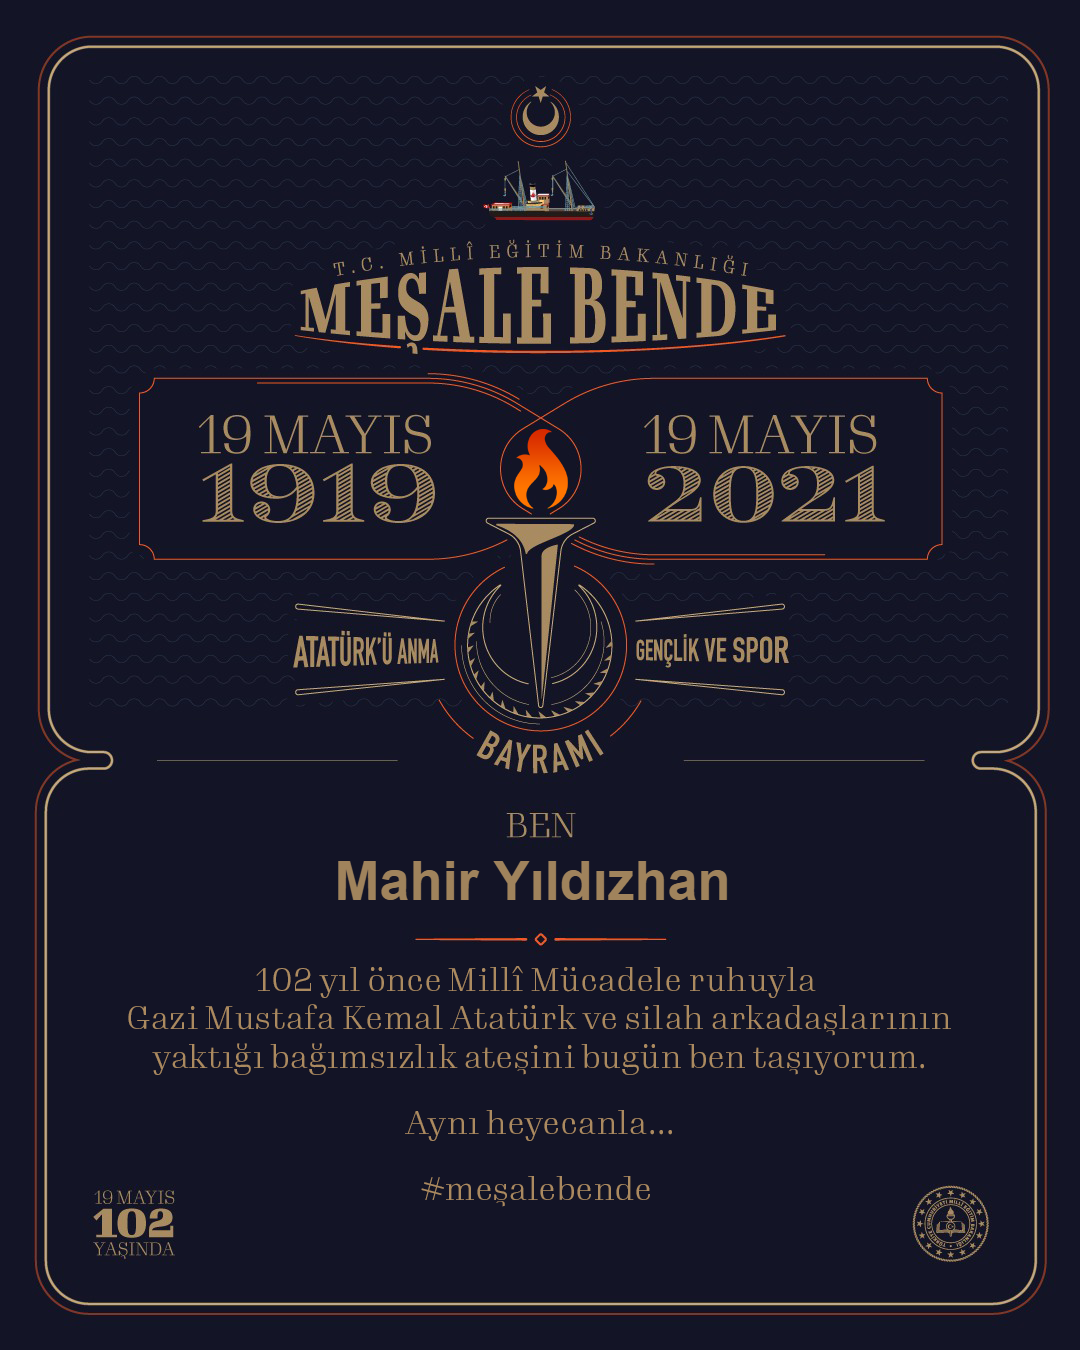 19 Mayıs 2021 Atatürk'ü Anma, Gençlik ve Spor Bayramı